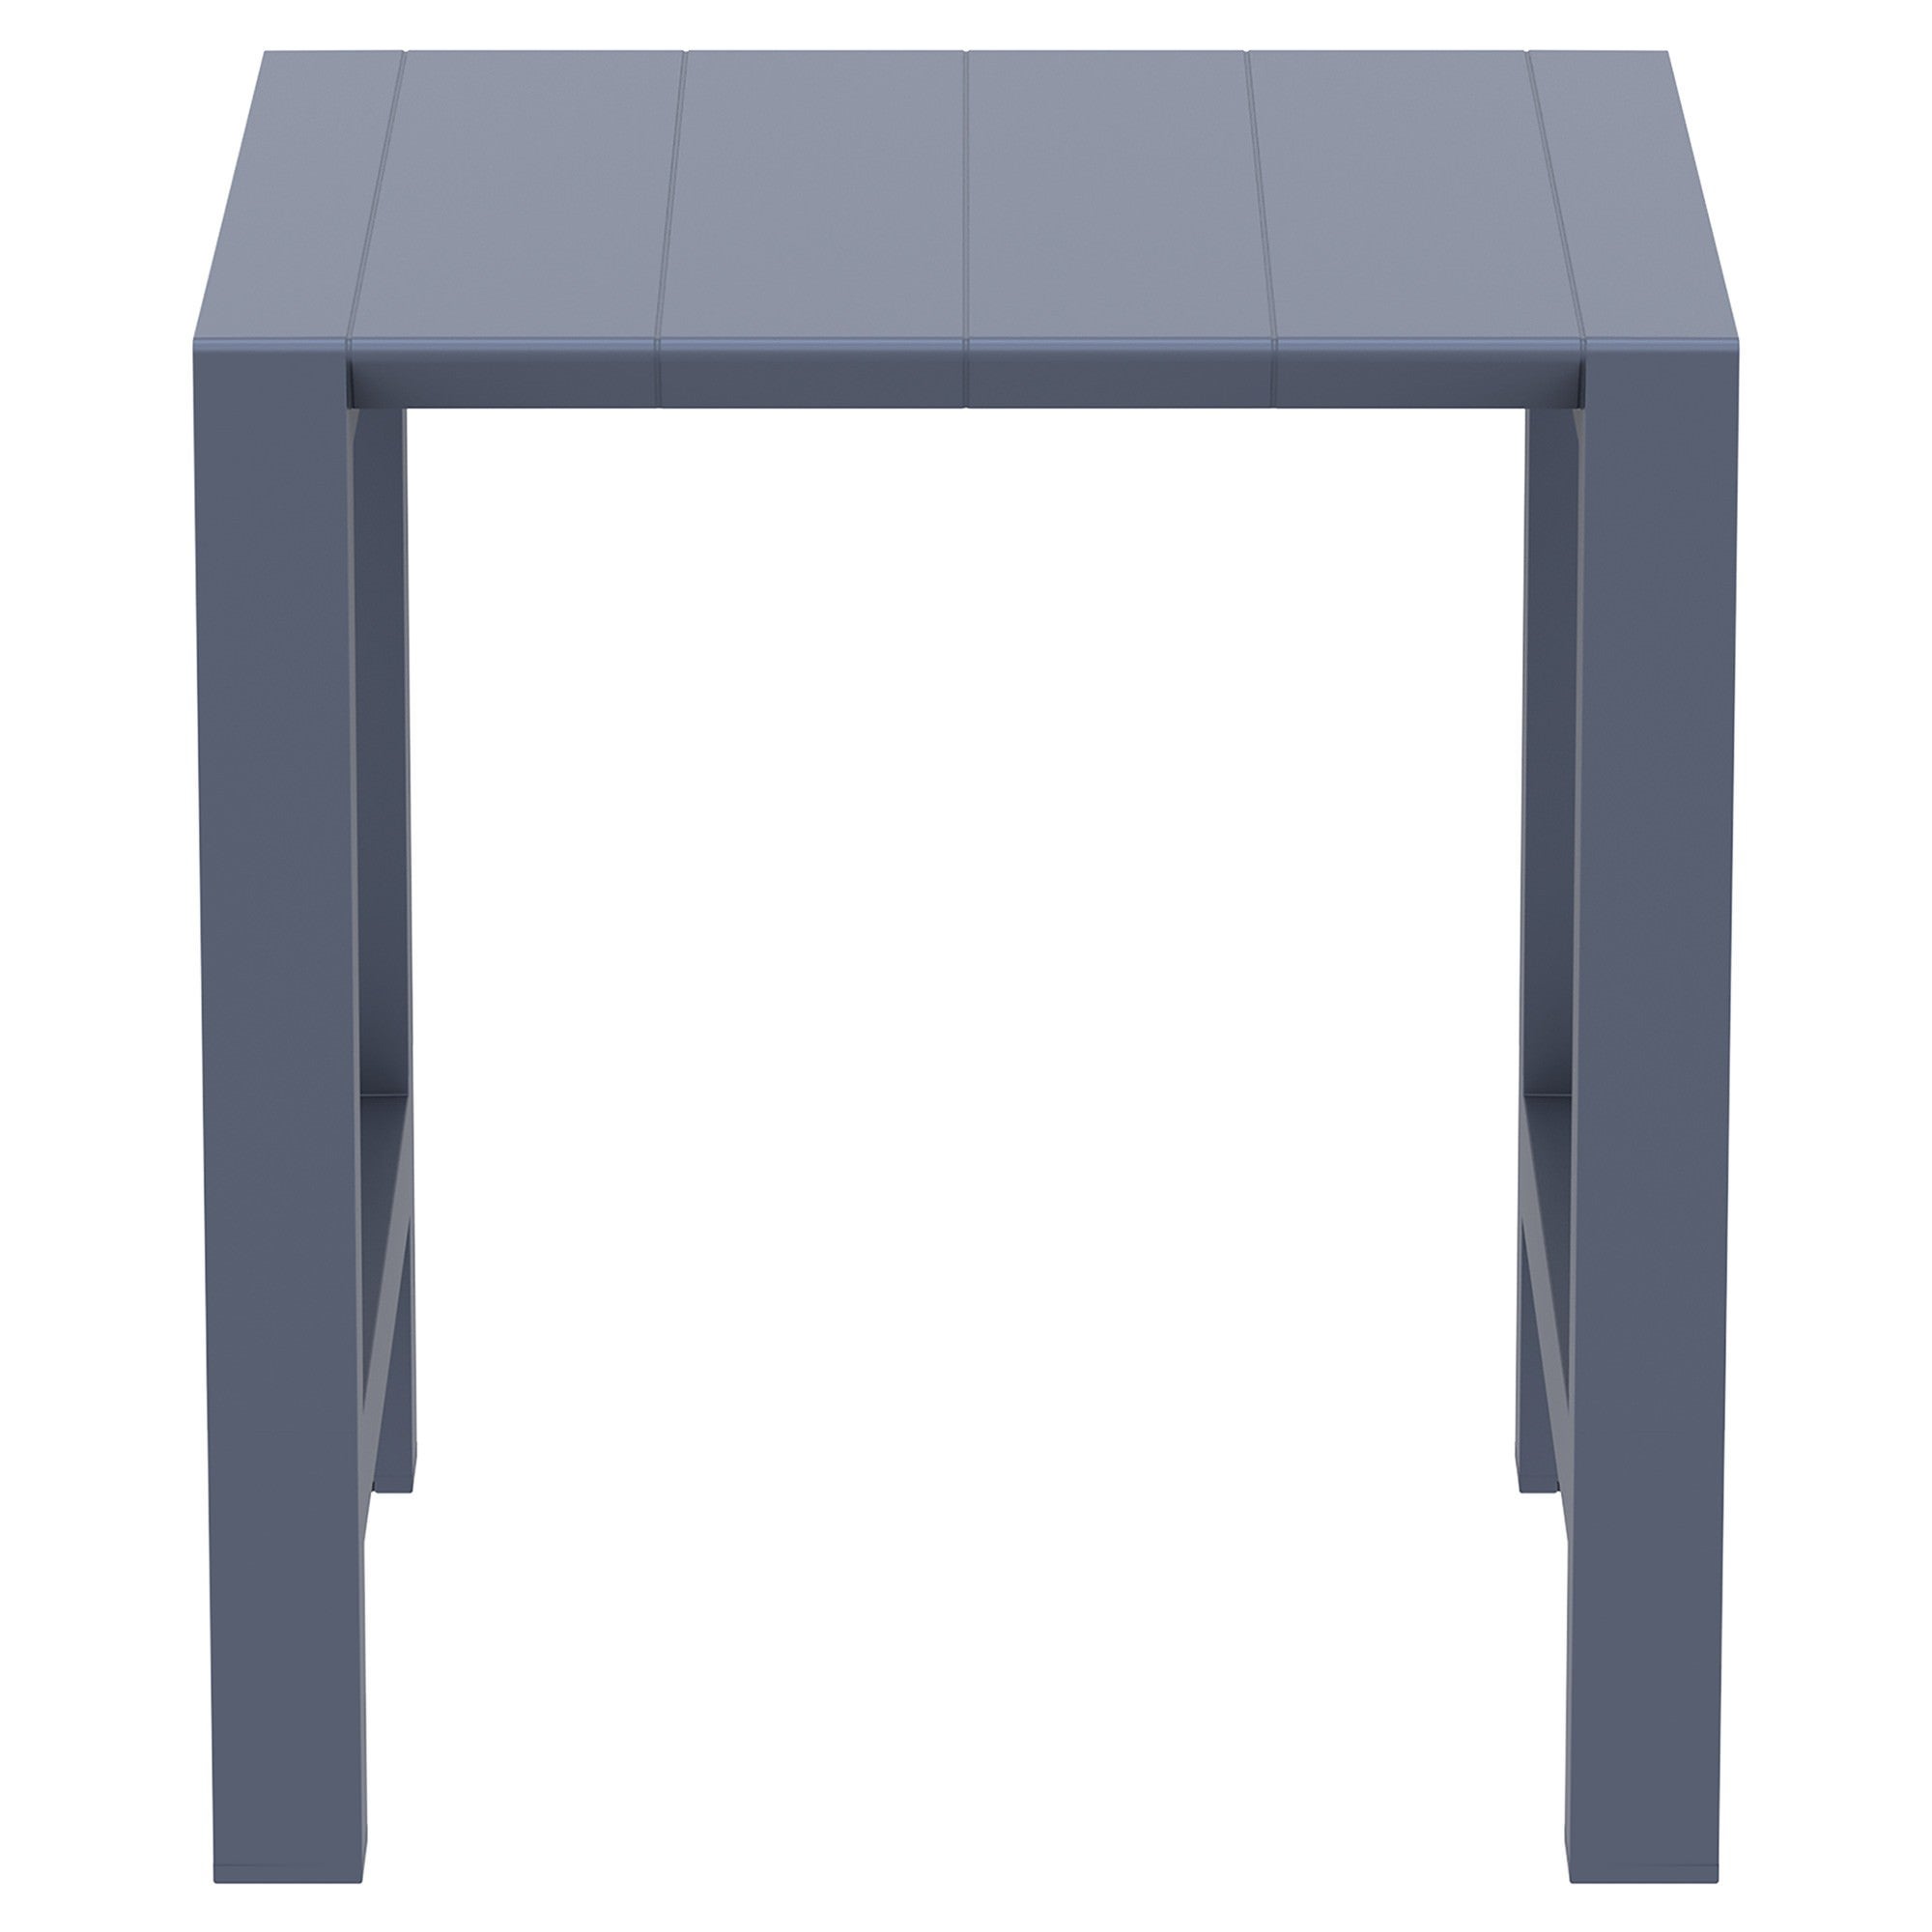 Siesta Vegas Commercial Grade Outdoor Extendible Bar Table, 100-140cm, Grey